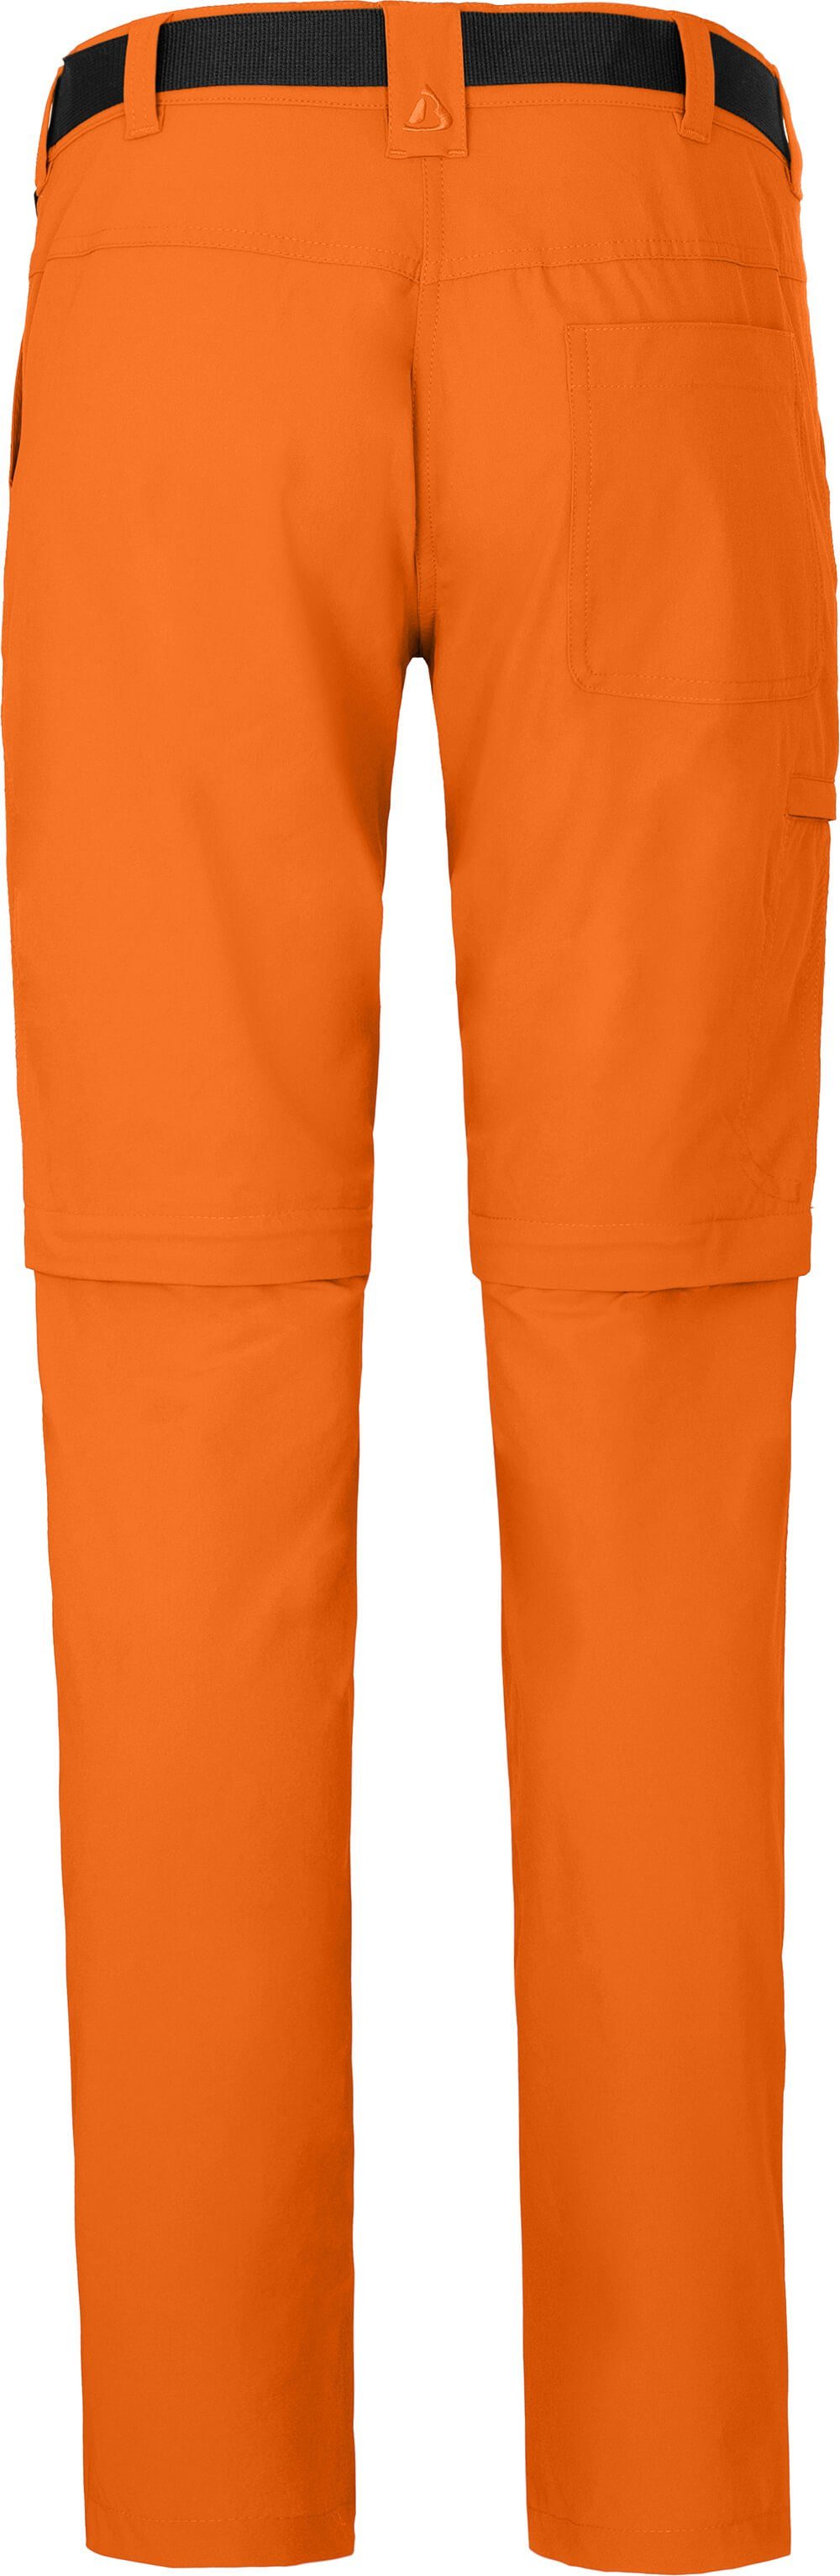 Normalgrößen, (slim) orange Zip-off-Hose pflegeleicht, Damen BENNETT Wanderhose, Bergson vielseitig, Zipp-Off